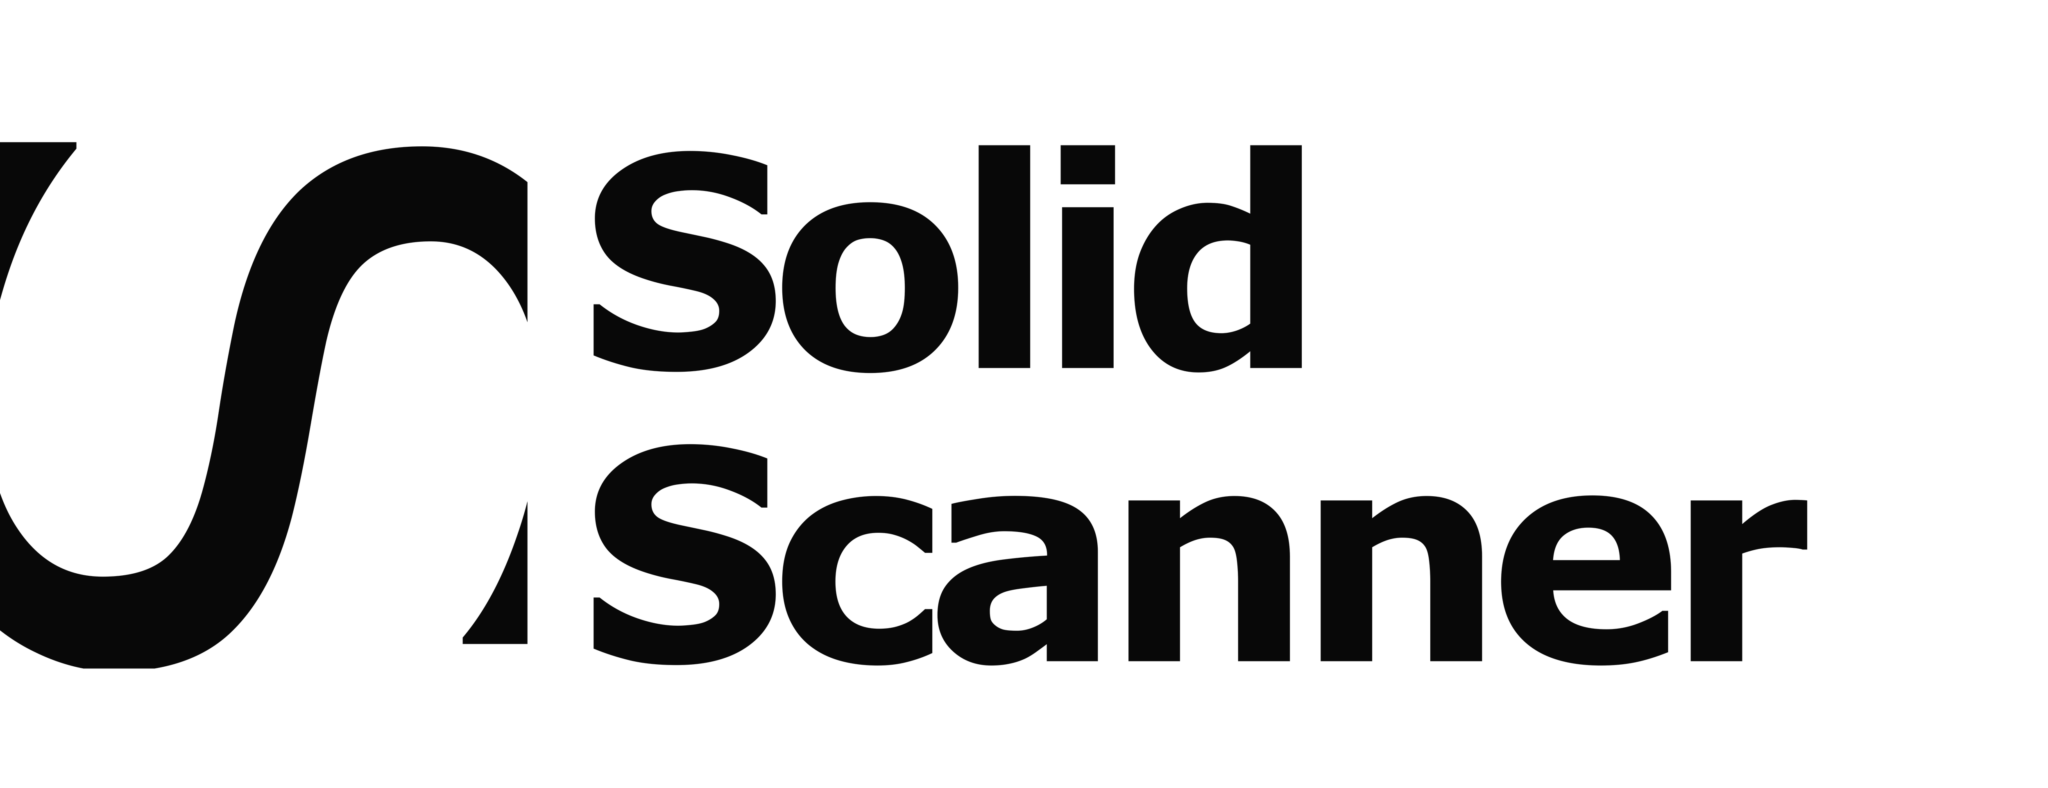 Solid Scanner Logo